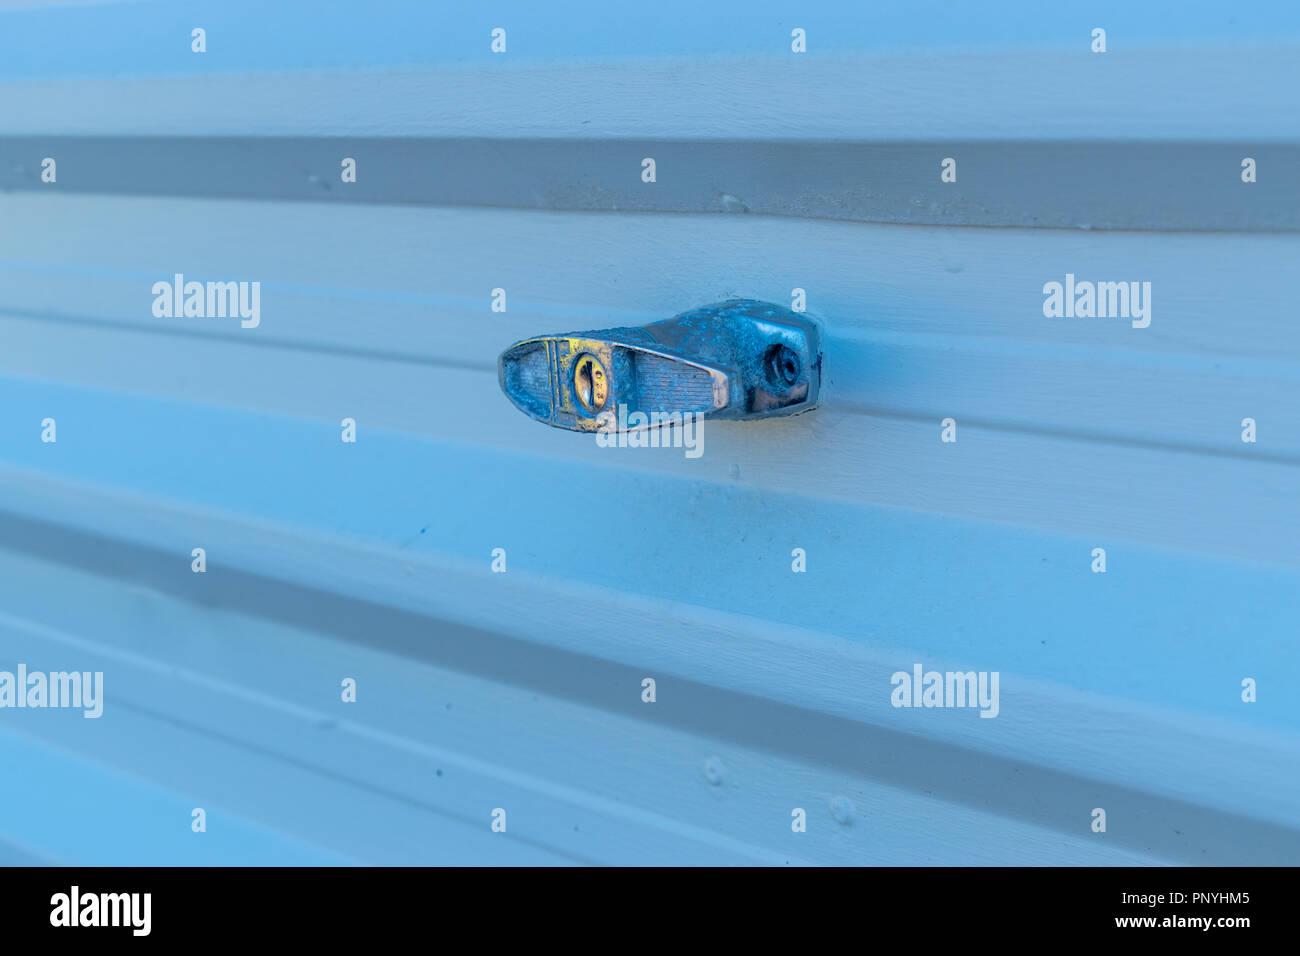 Colore bluastro tingono immagine di una maniglia porta per garage in posizione bloccata su una luce colorata metallo scanalato otturatore Foto Stock